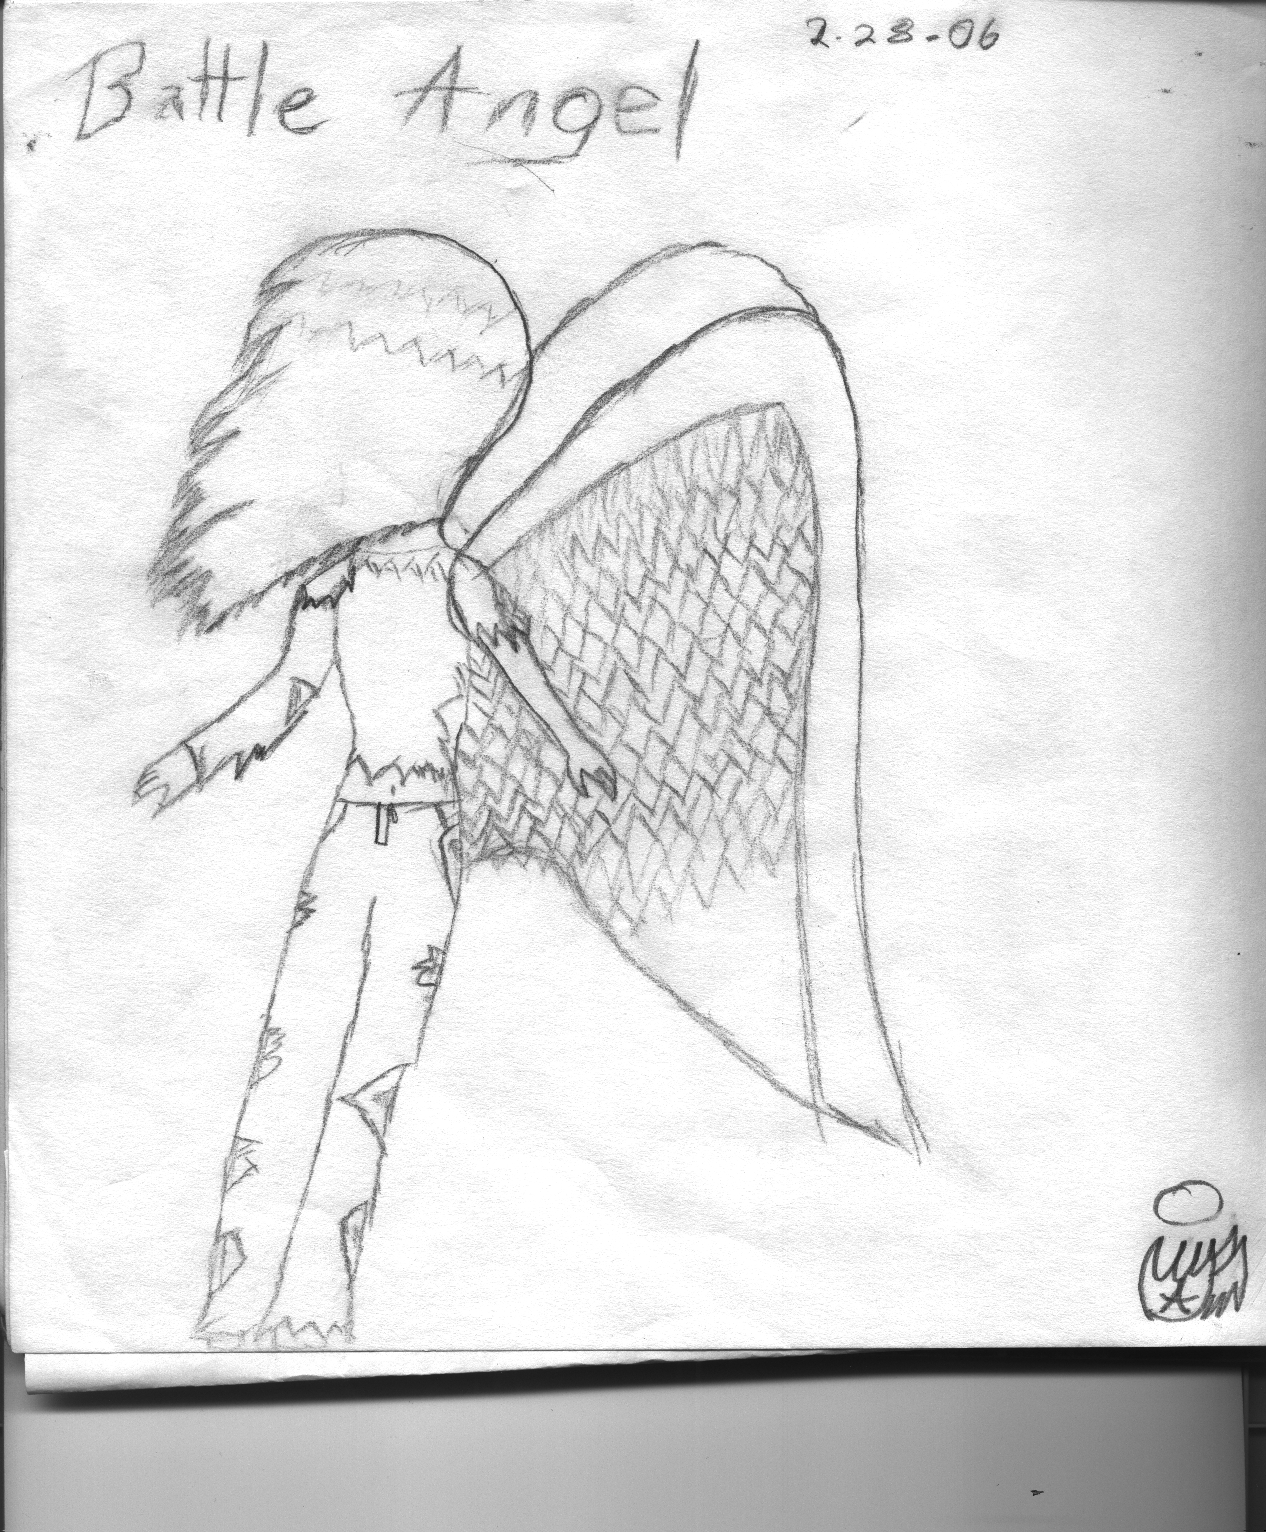 Battle Angel by ember-luna